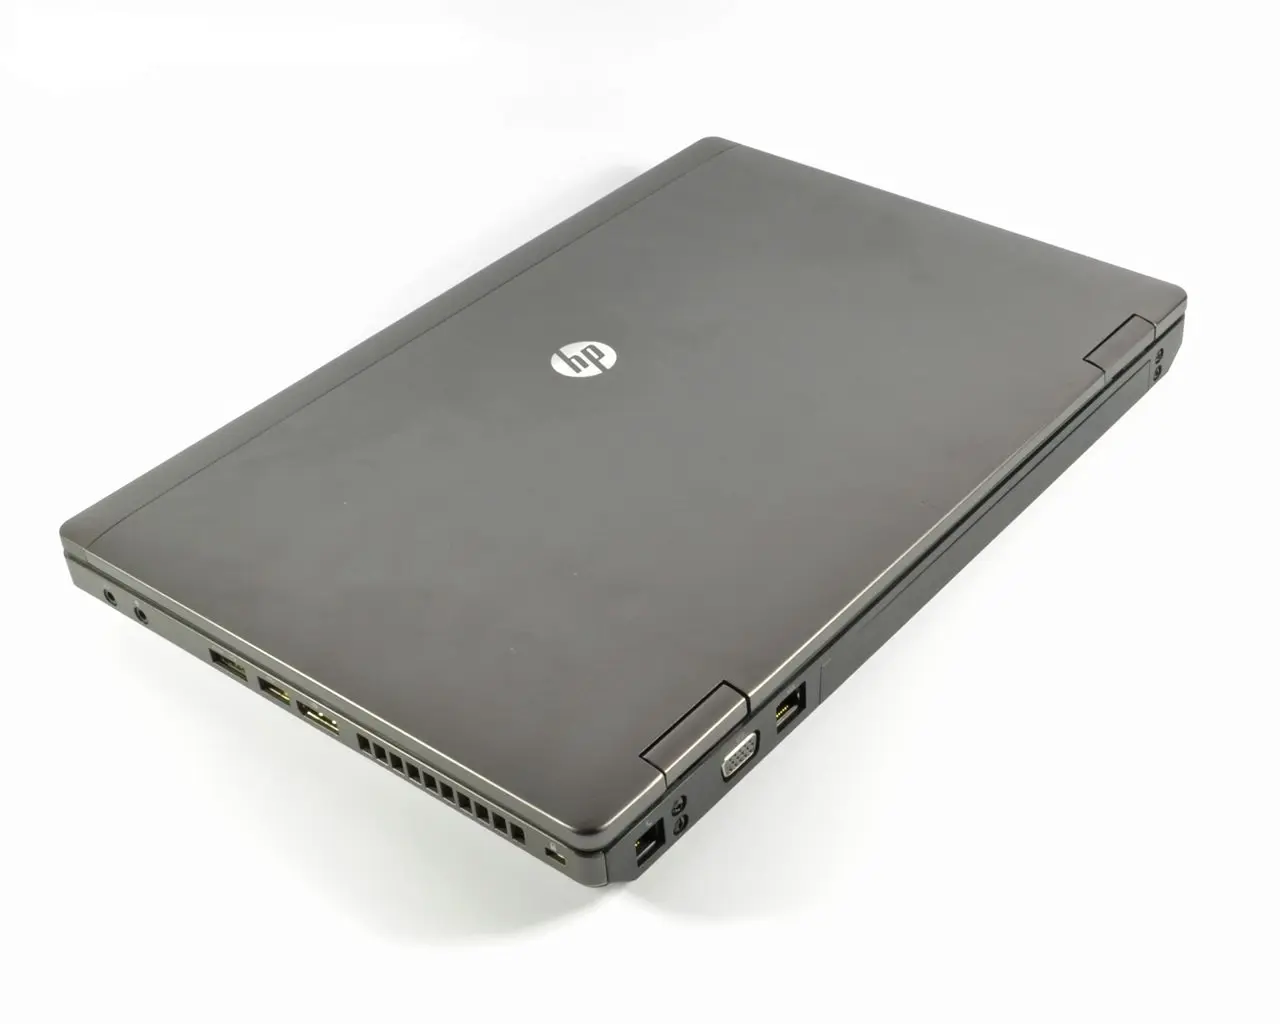 hewlett packard hp probook 6470b - What is the maximum RAM of HP ProBook 6470b